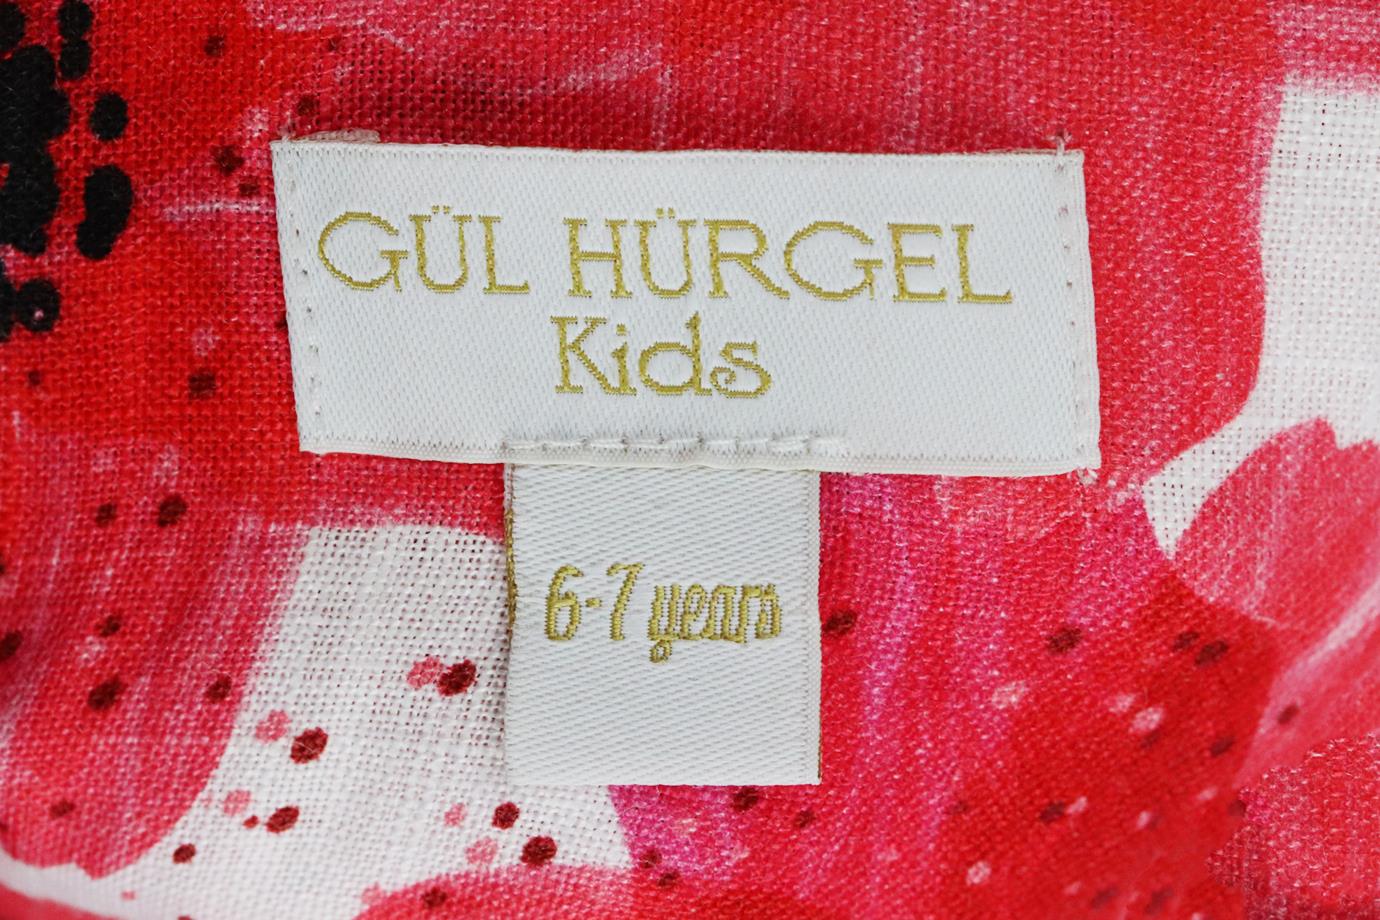 GÜL HÜRGEL KIDS GIRLS FLORAL PRINT LINEN DRESS 6-7 YEARS